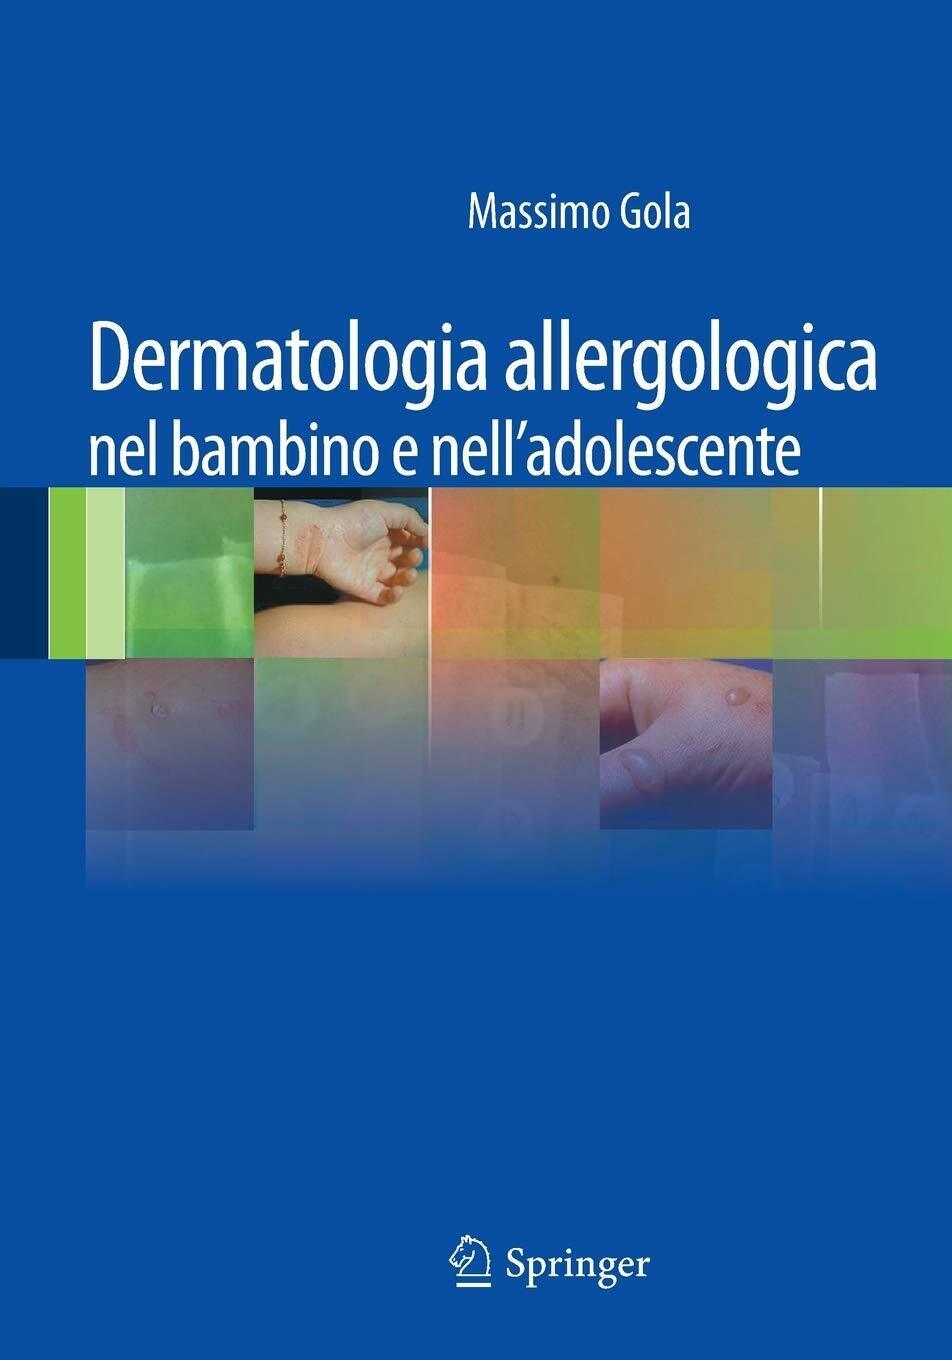 Dermatologia allergologica nel bambino e nell'adolescente - M. Gola - 2011 libro usato